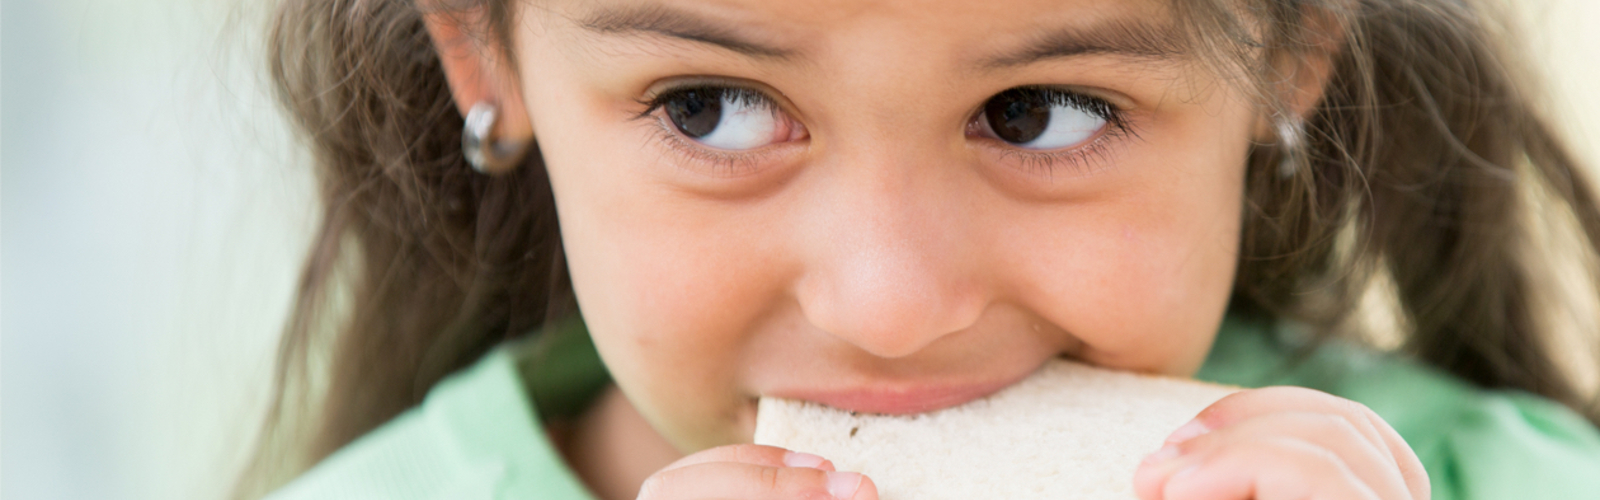 Little girl eating a sandwich